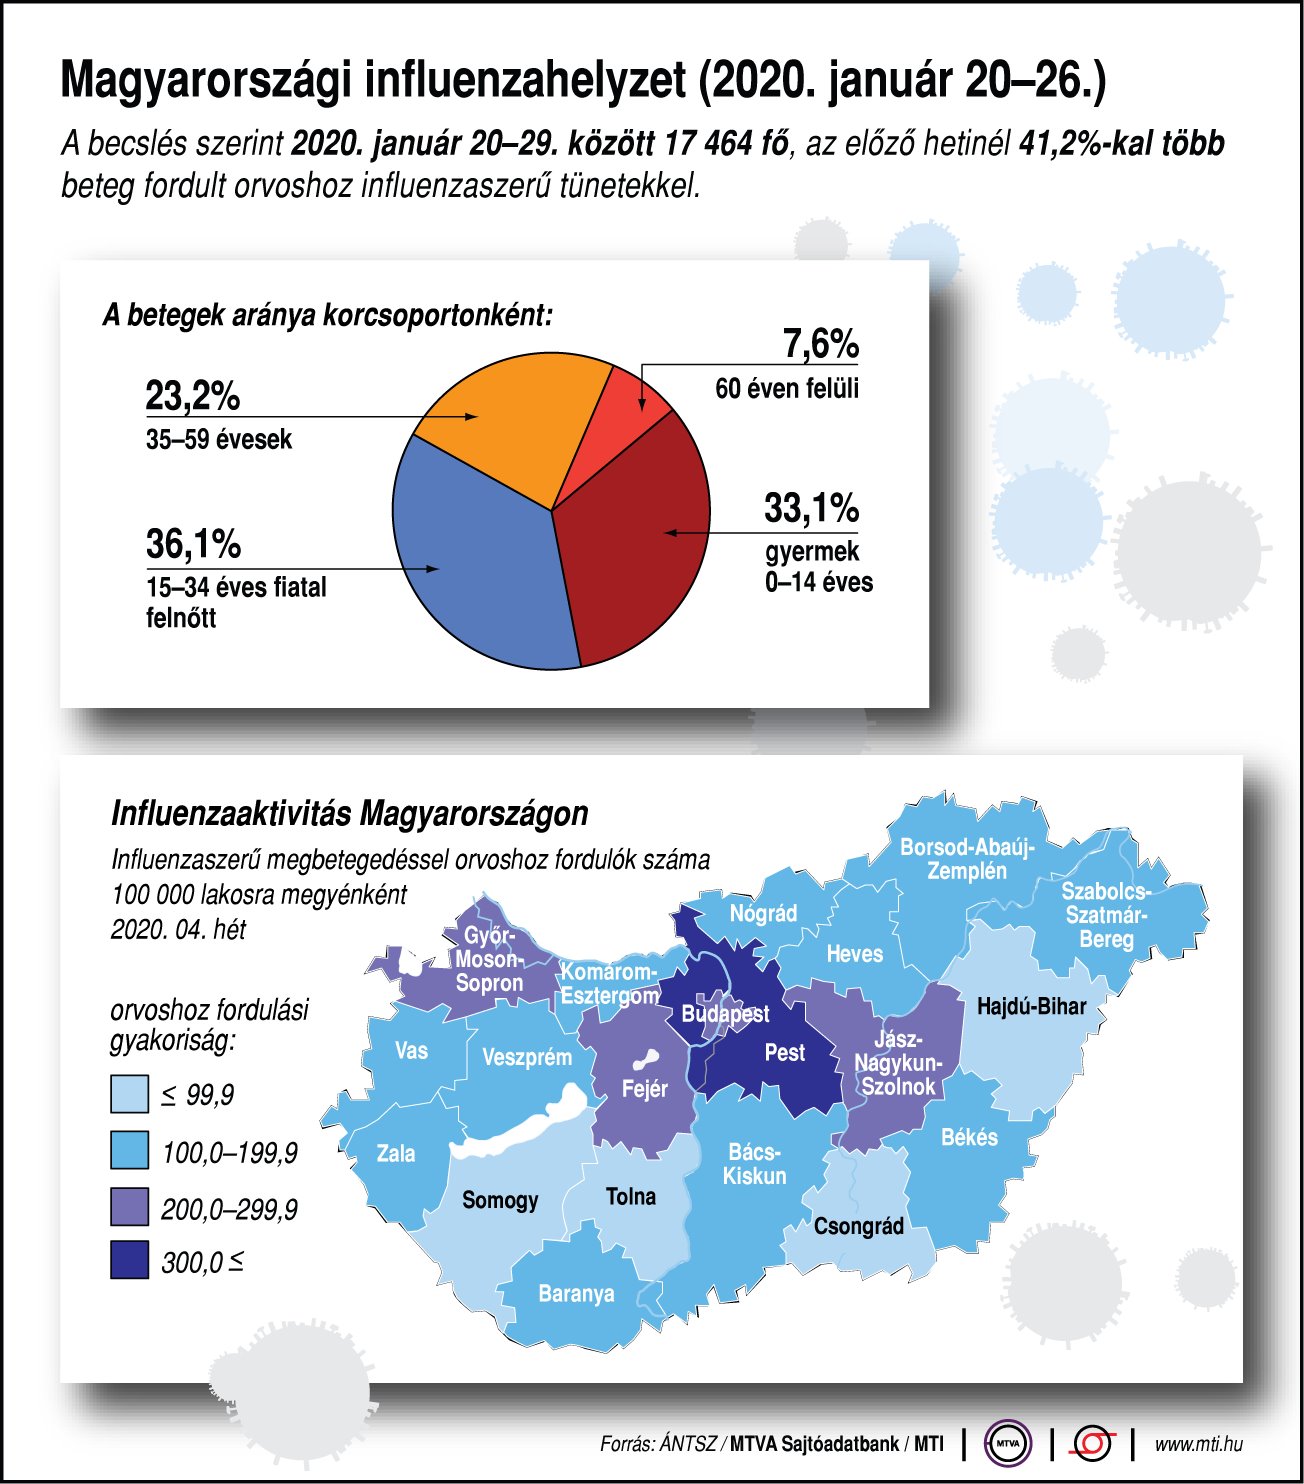 Rövidhír- Magyarországi influenzahelyzet (2020. január 20-26.)